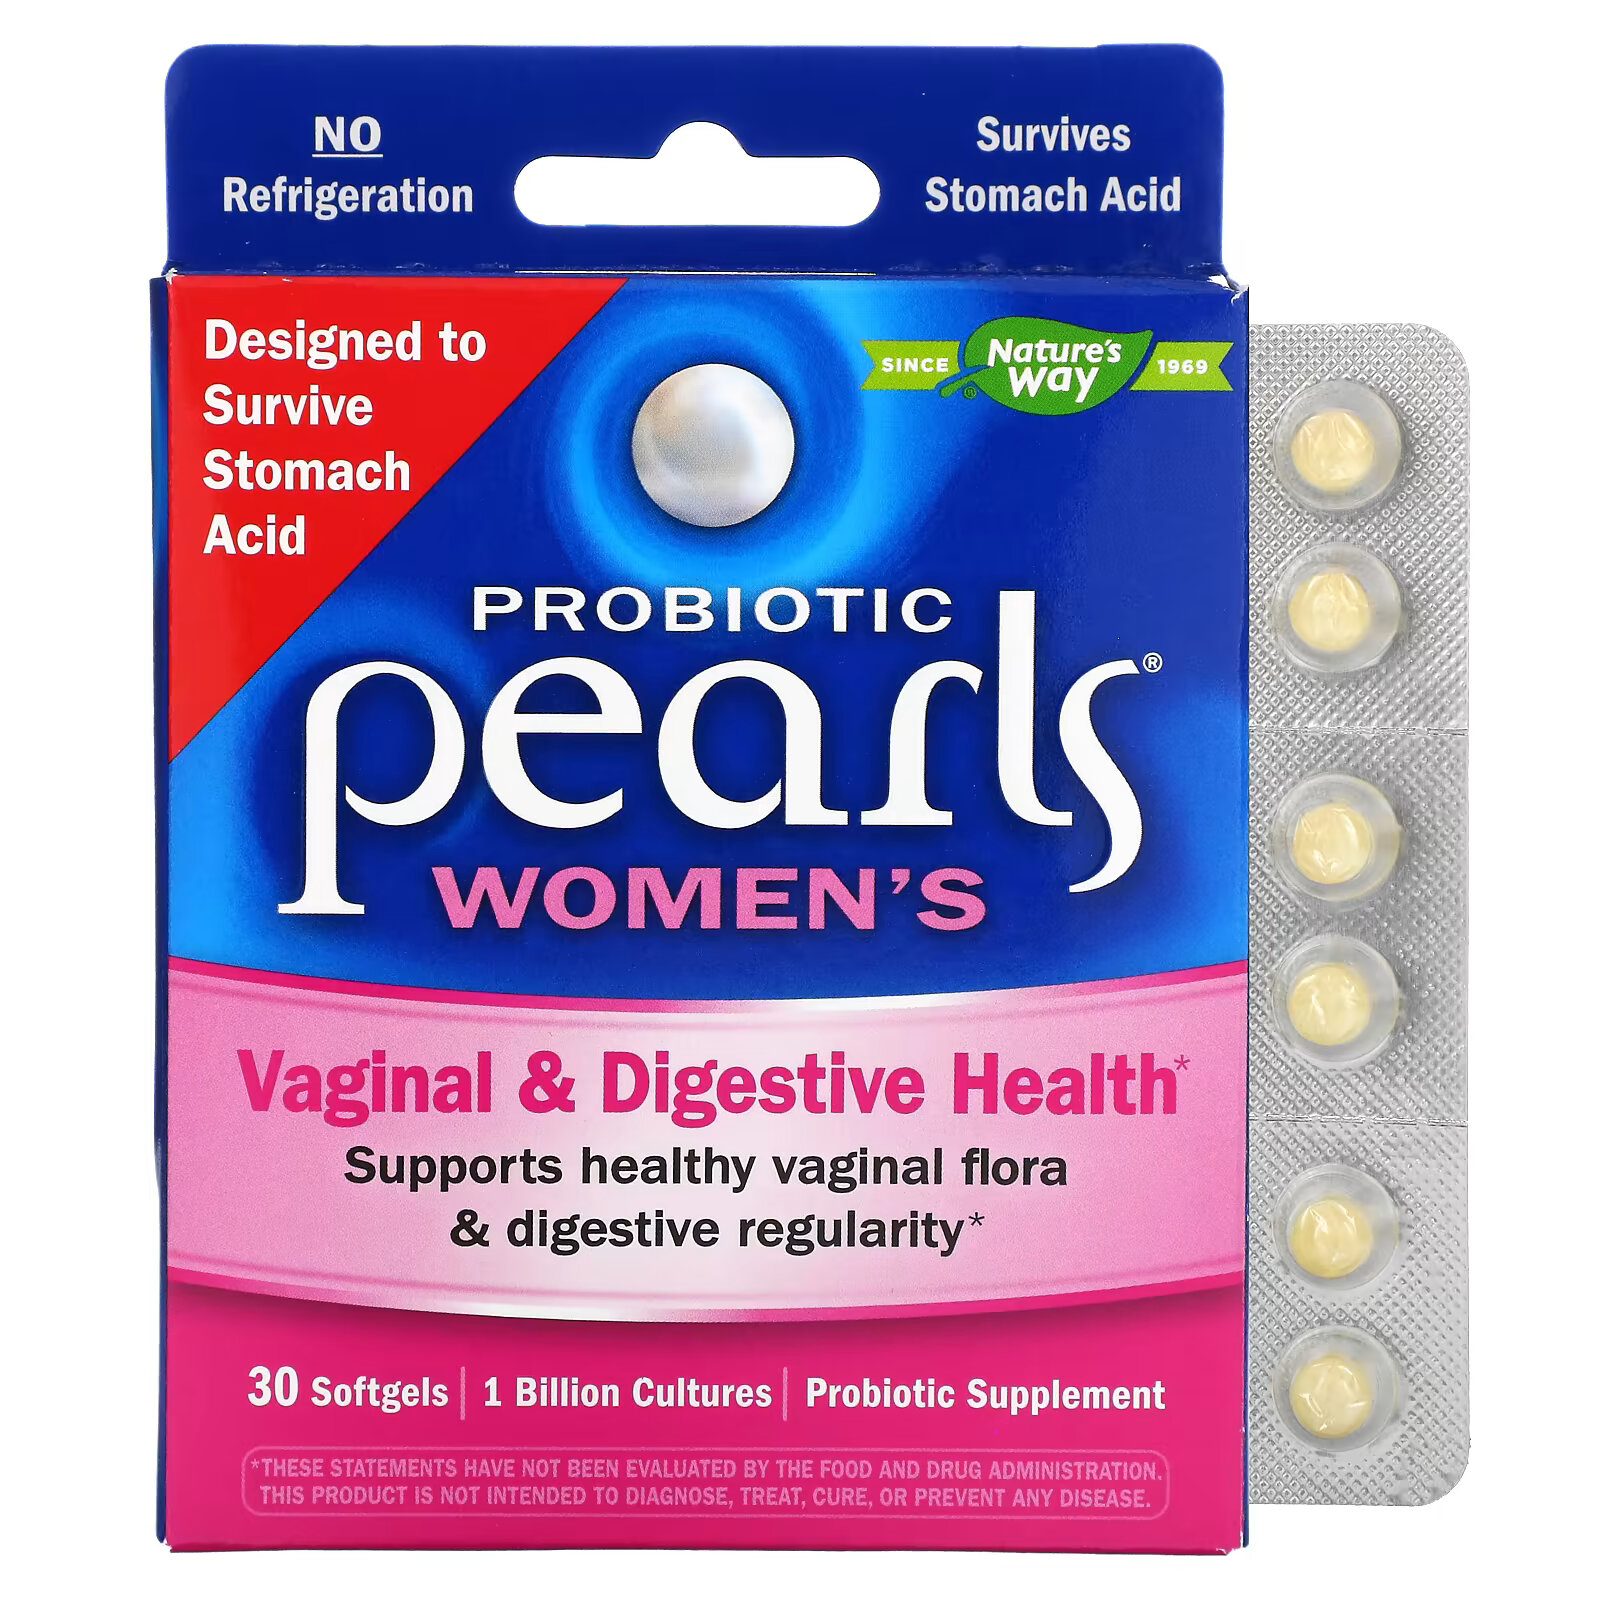 Nature's Way вагинальное здоровье и здоровье кишечника, 30 капсул nature s way probiotic pearls для женщин вагинальное здоровье и здоровье кишечника 30 мягких желатиновых капсул